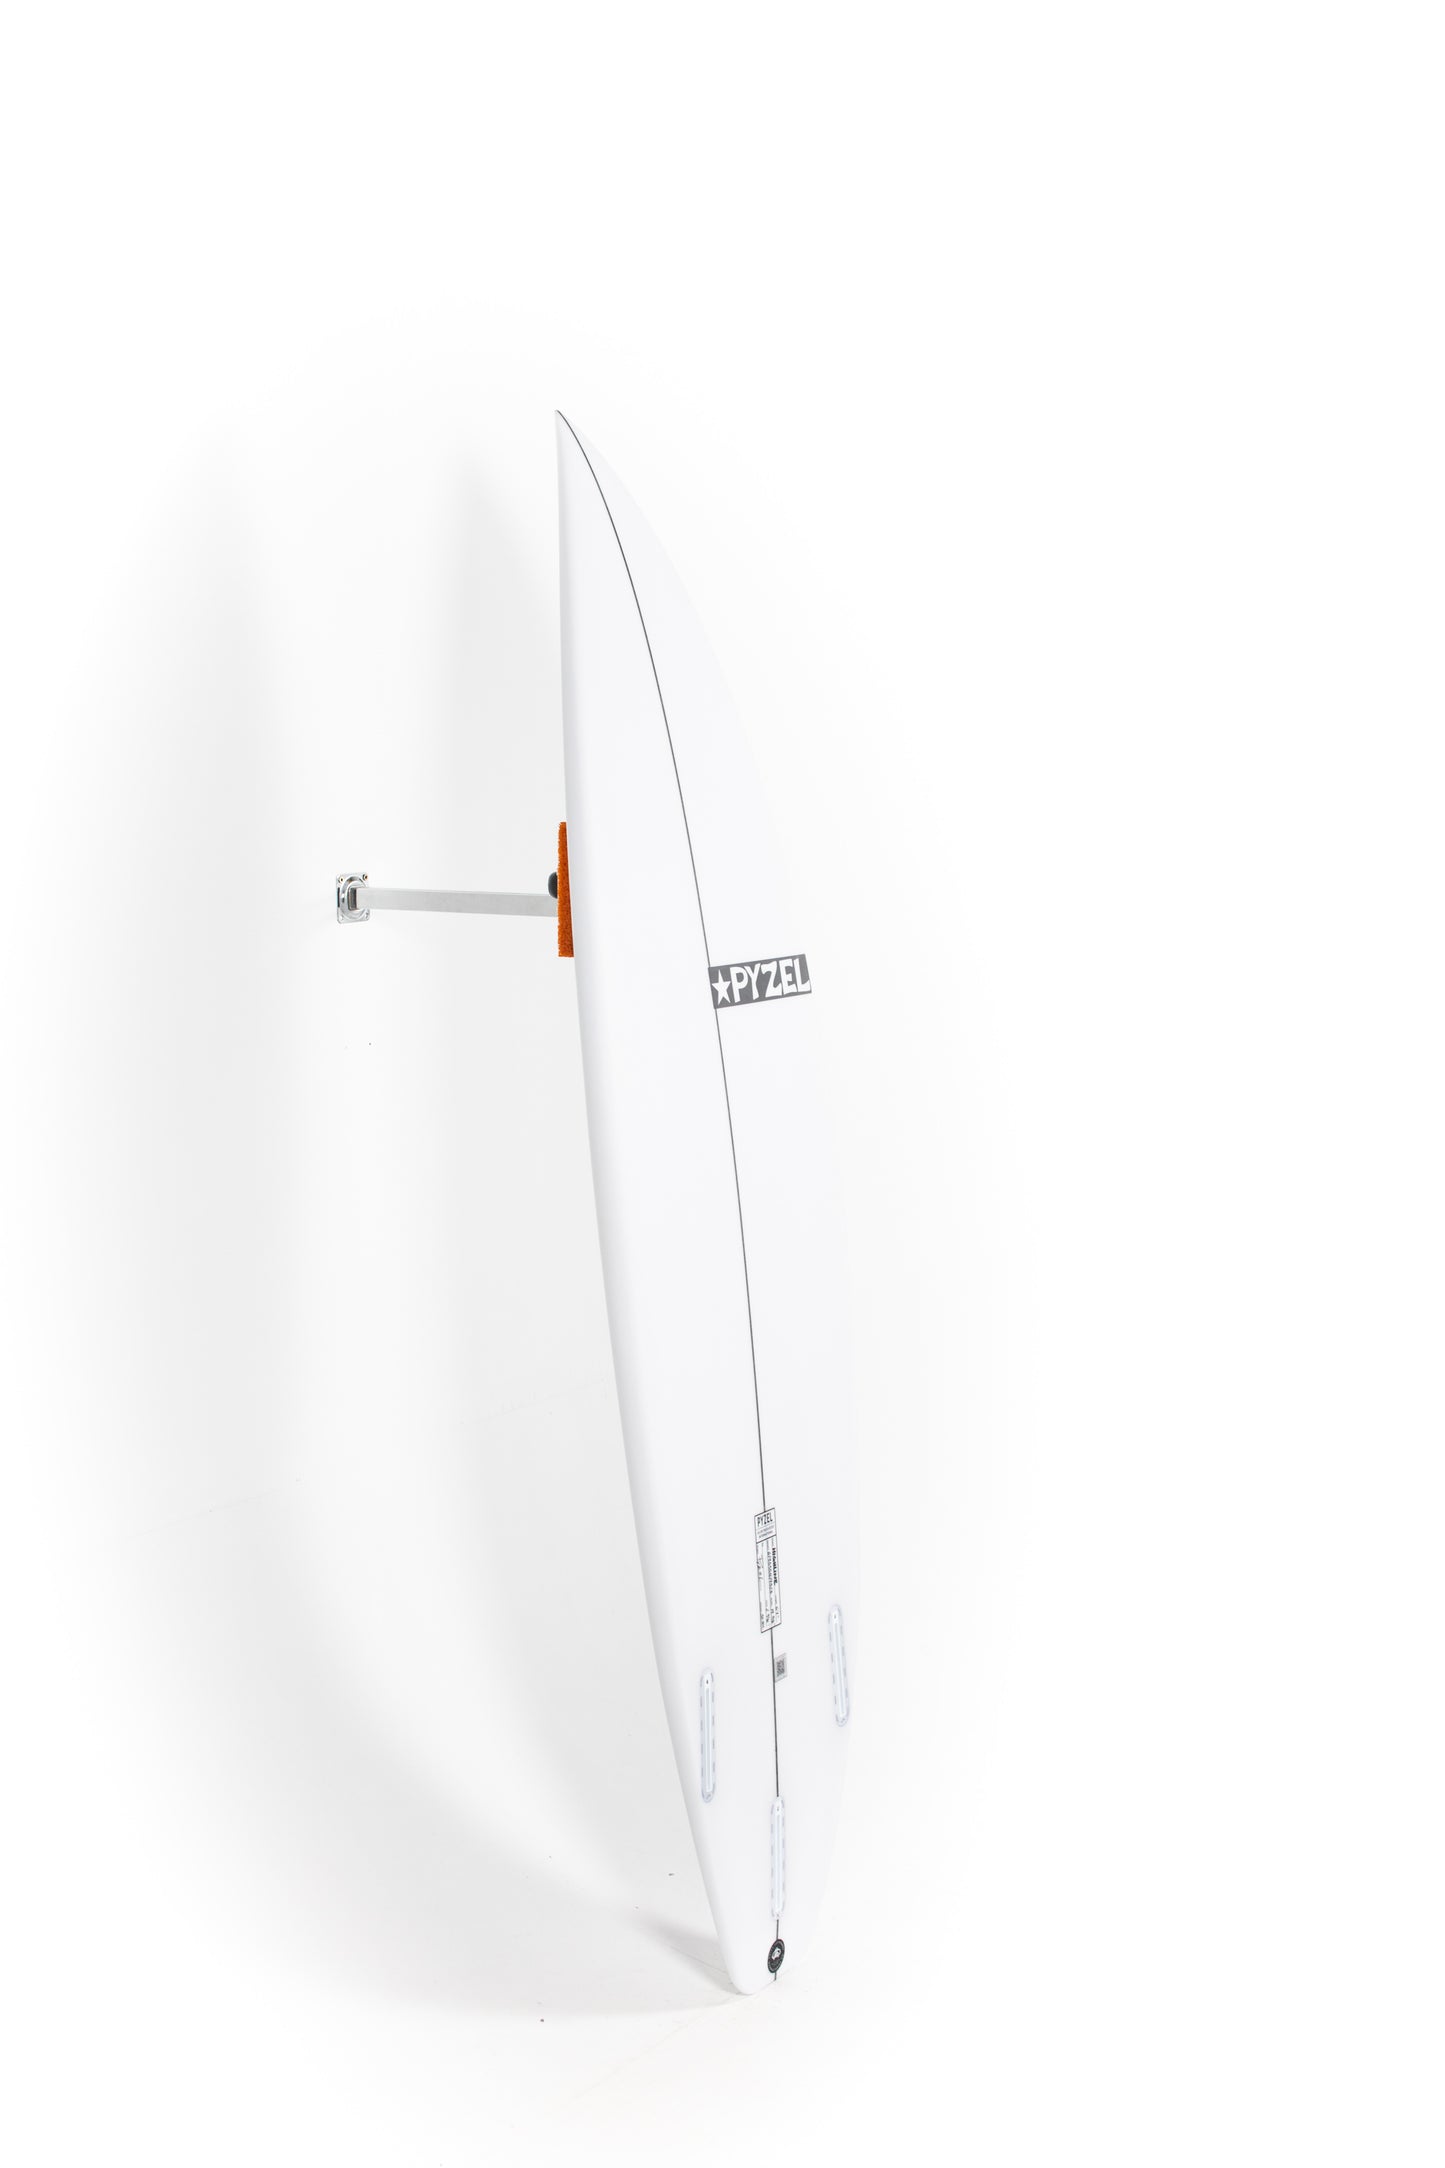 
                  
                    Pukas Surf Shop - Pyzel Surfboards - HIGH LINE - 6'1" x 19 3/8 x 2 9/16 x 30,80L - Ref: 679323
                  
                